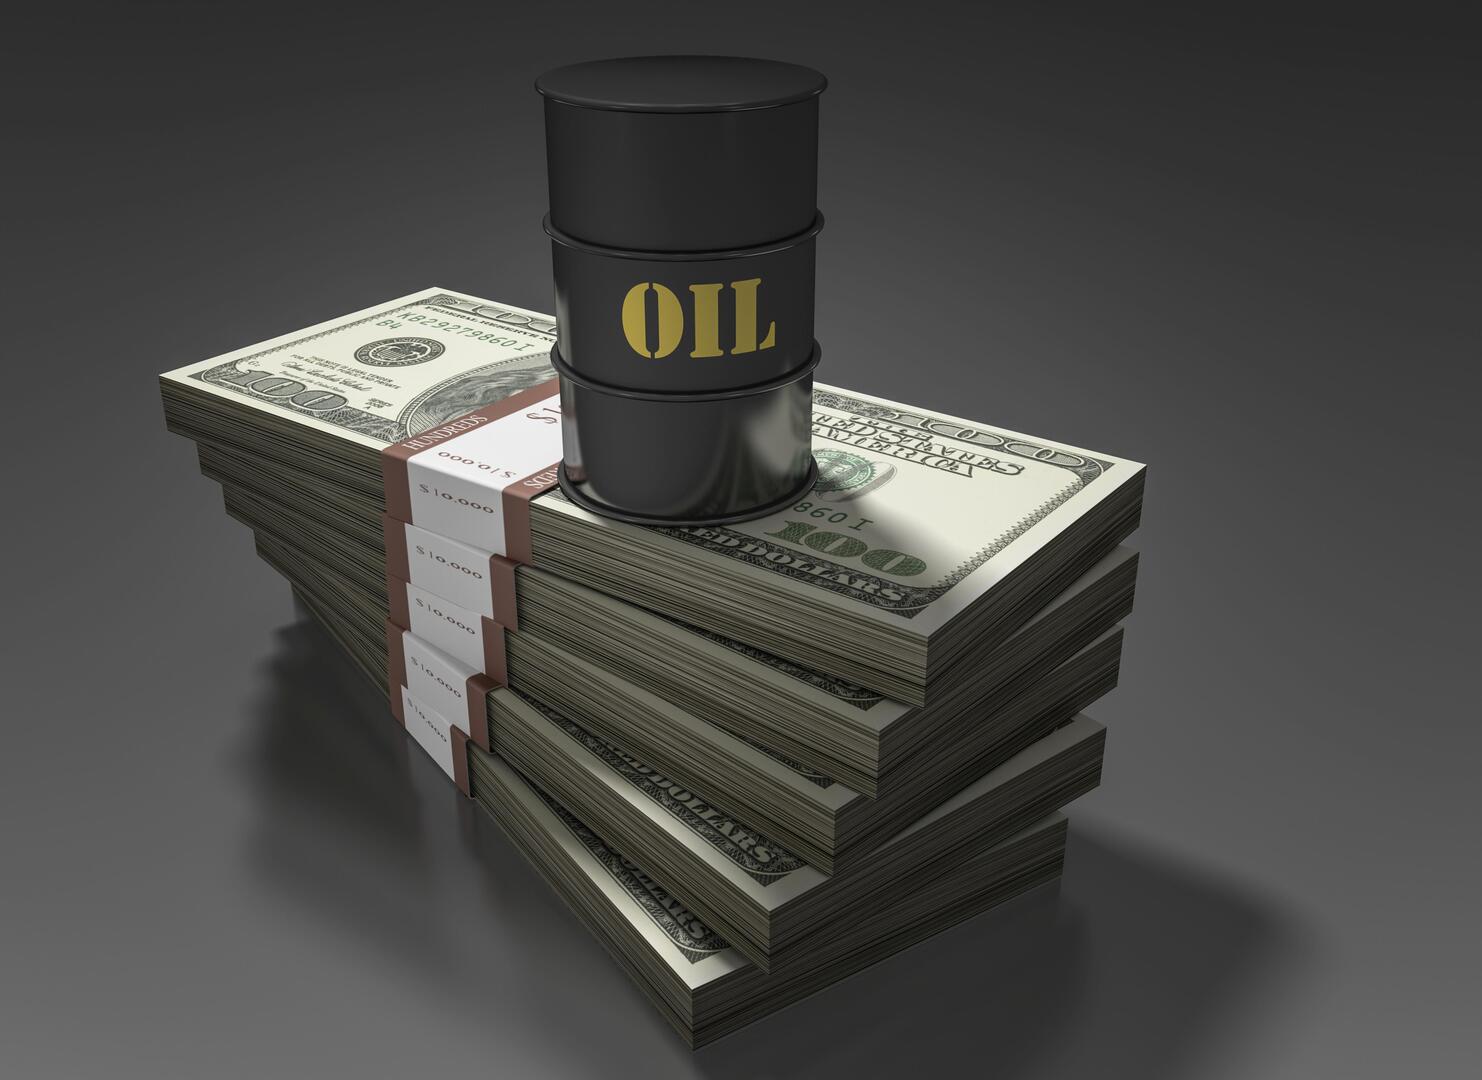 بعد تراجعها بسبب الدولار.. كيف تم تداول أسعار النفط؟